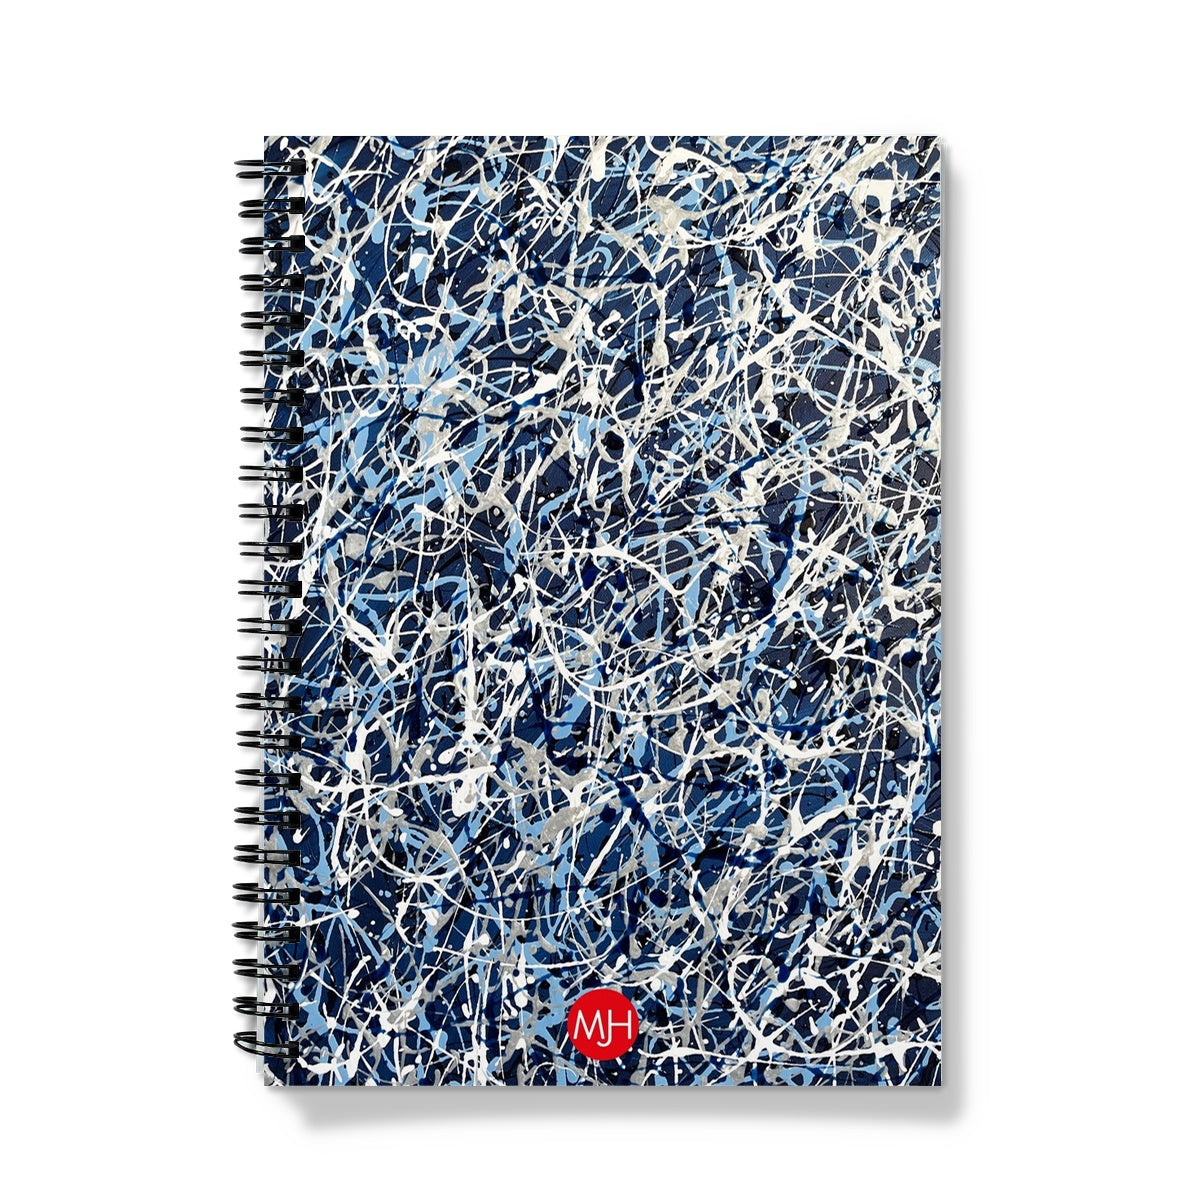 Maelstrom wiro-bound notebook